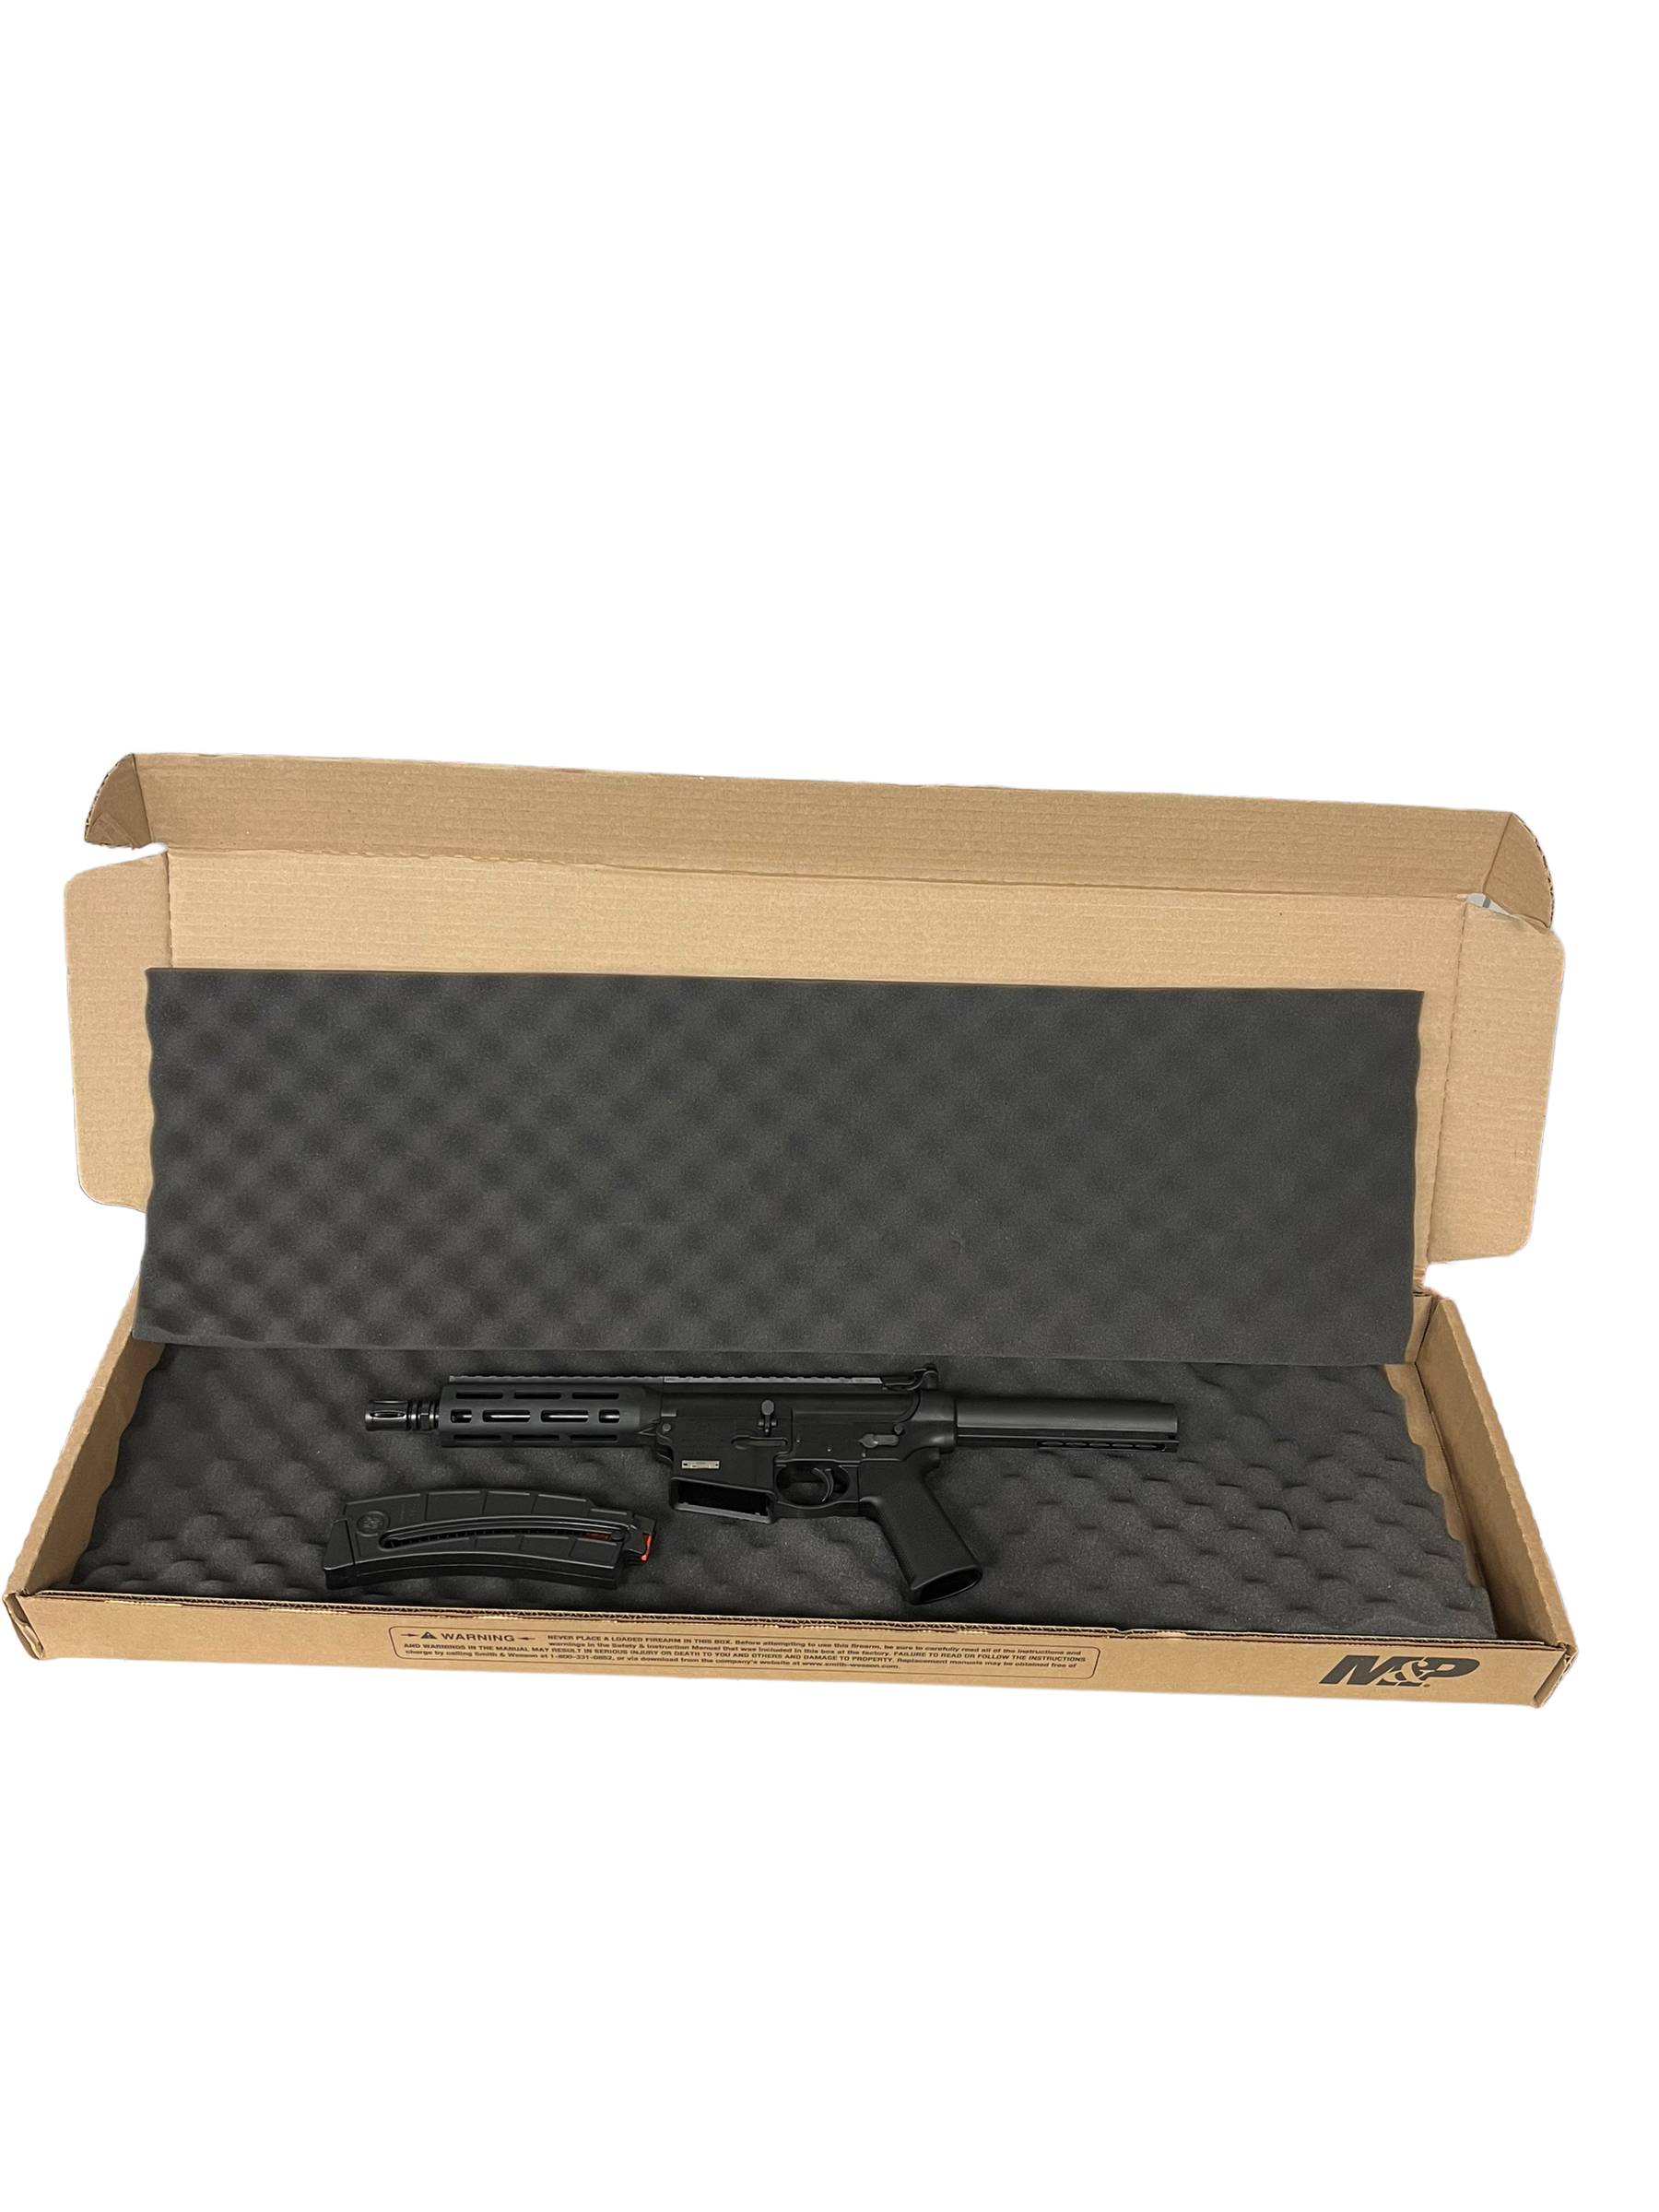 S&W M&P15-22 - 13321 8" Handgun-img-6